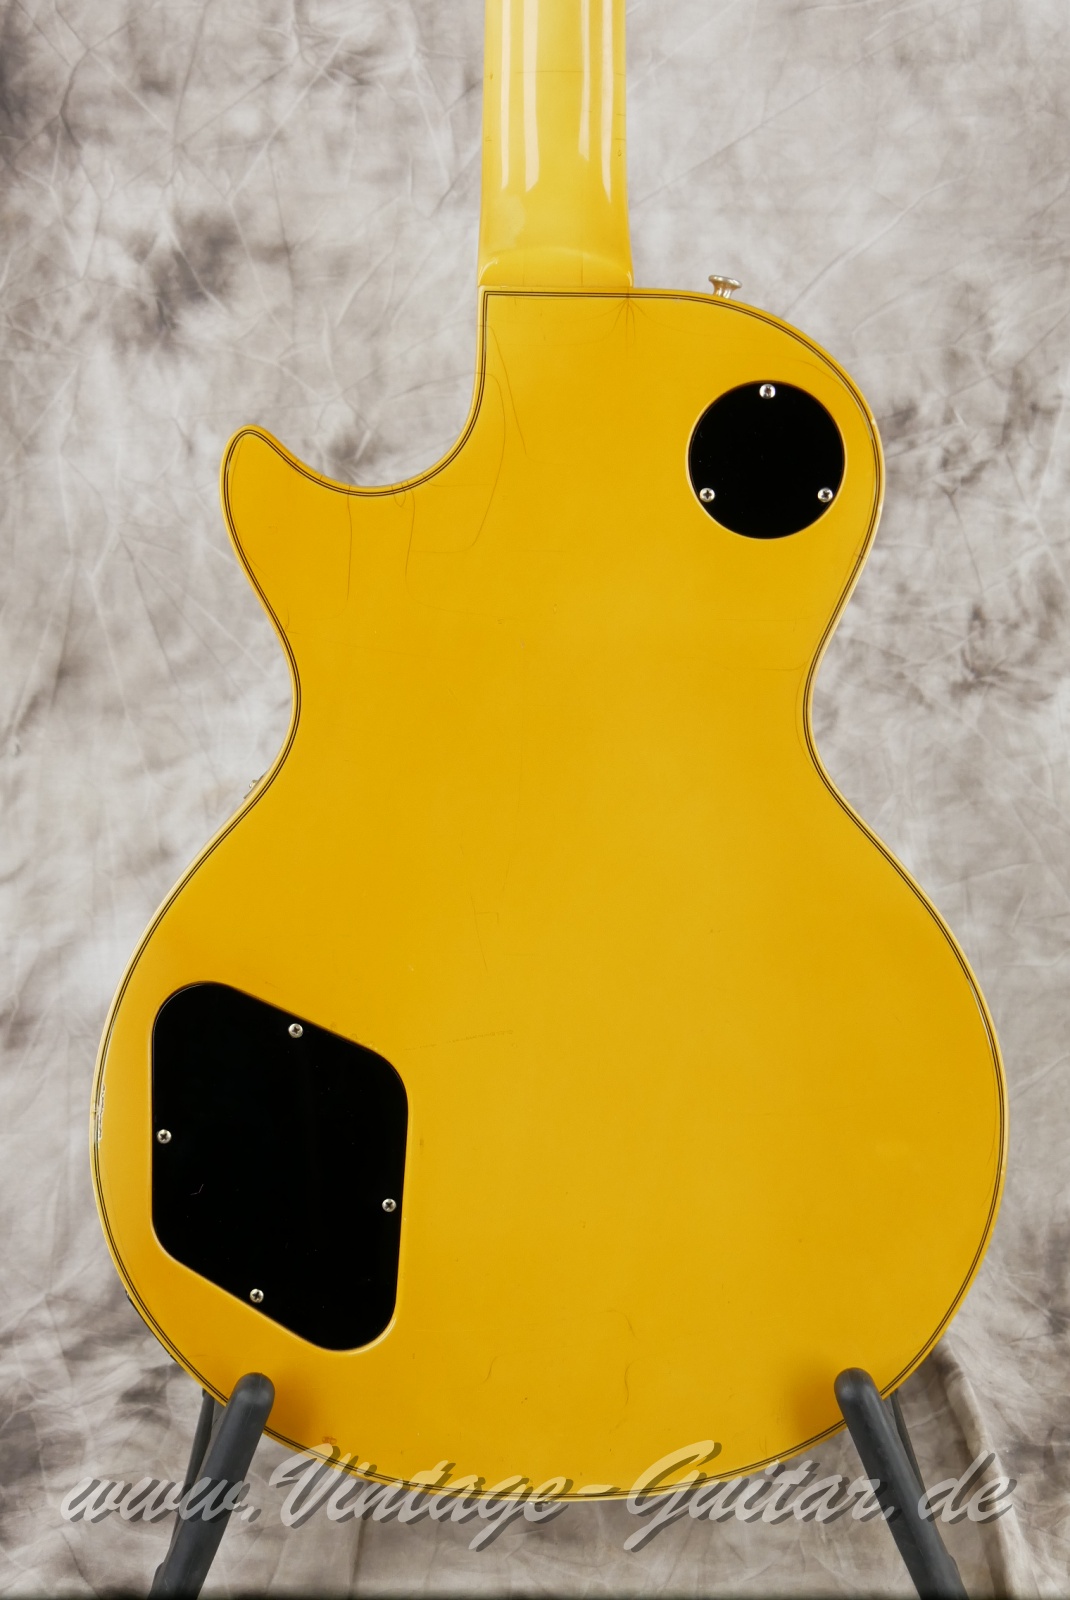 Gibson_Les Paul_Custom_alpine_white_1977-008.JPG